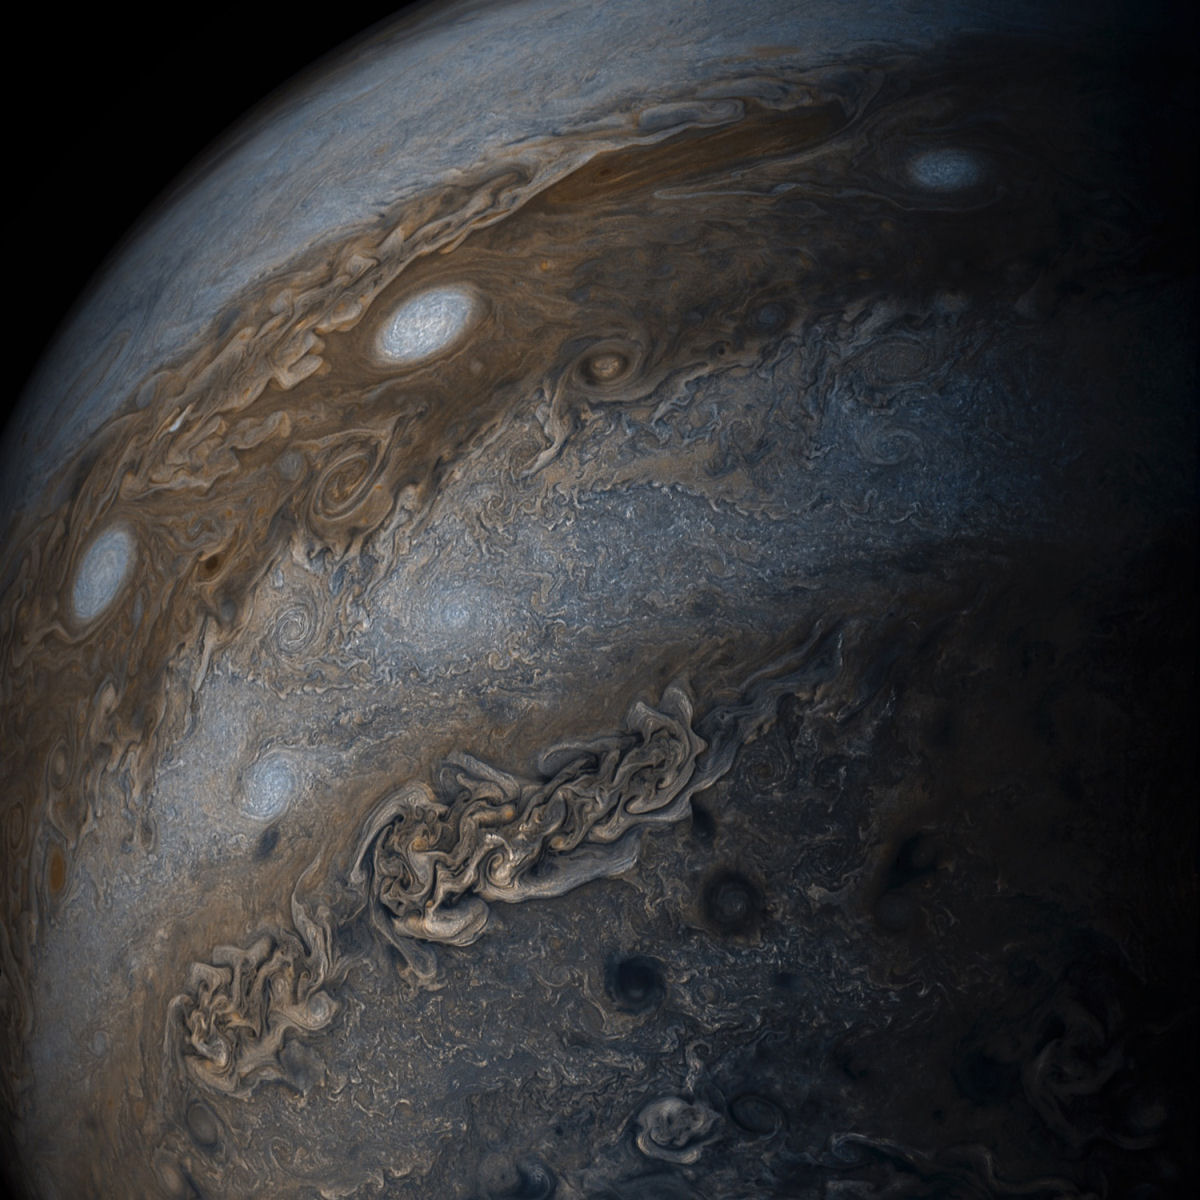 Imagens de close-up de Jpiter revelam uma paisagem impressionista de gases turbulentos 07